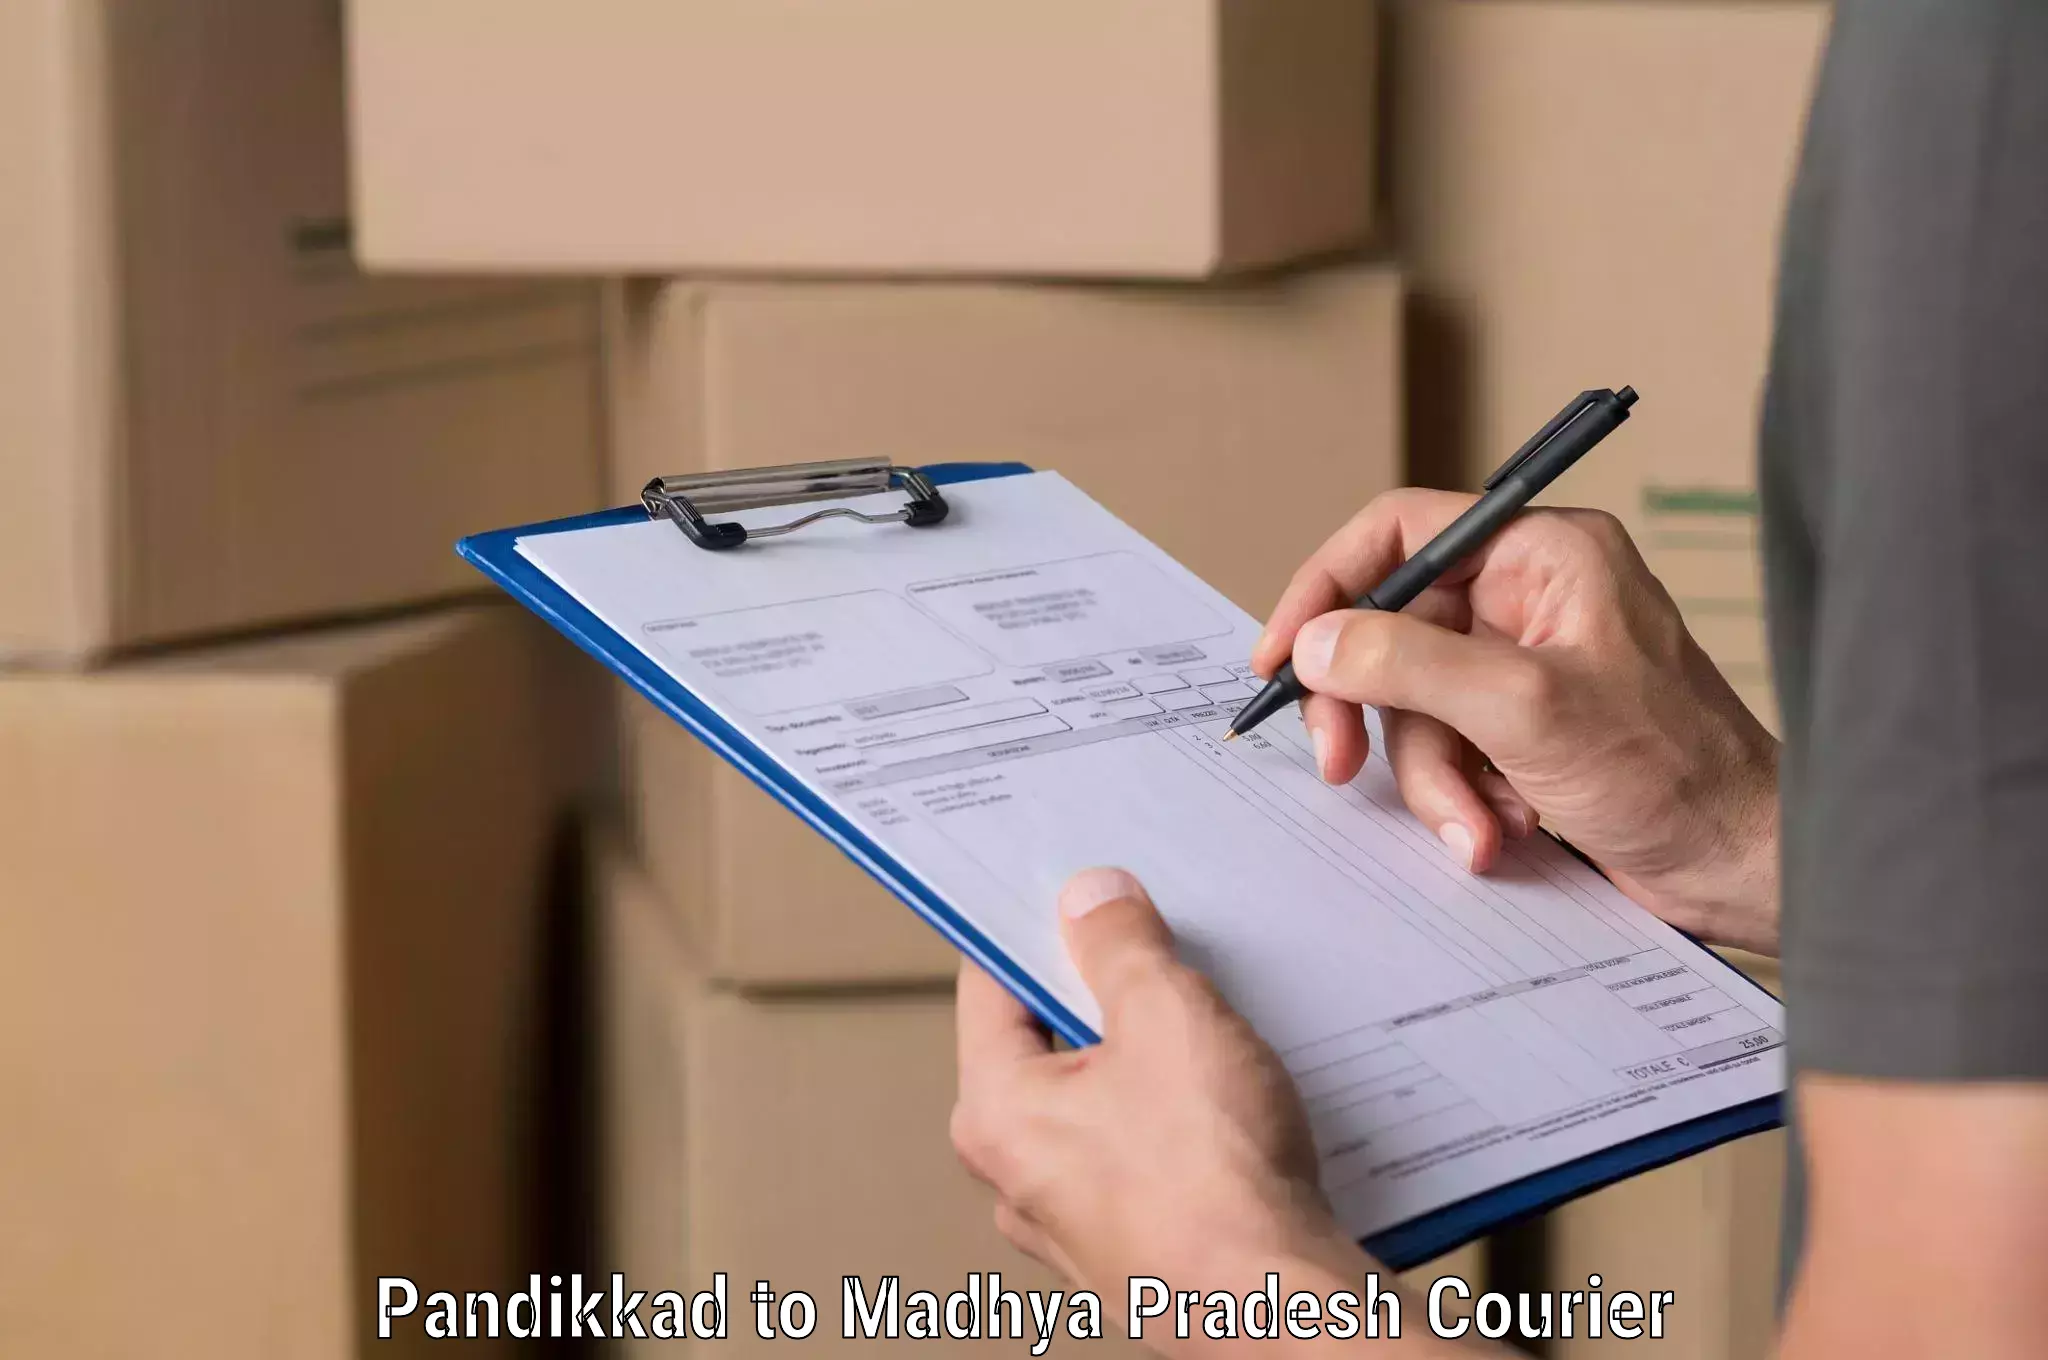 High-speed delivery Pandikkad to Madhya Pradesh